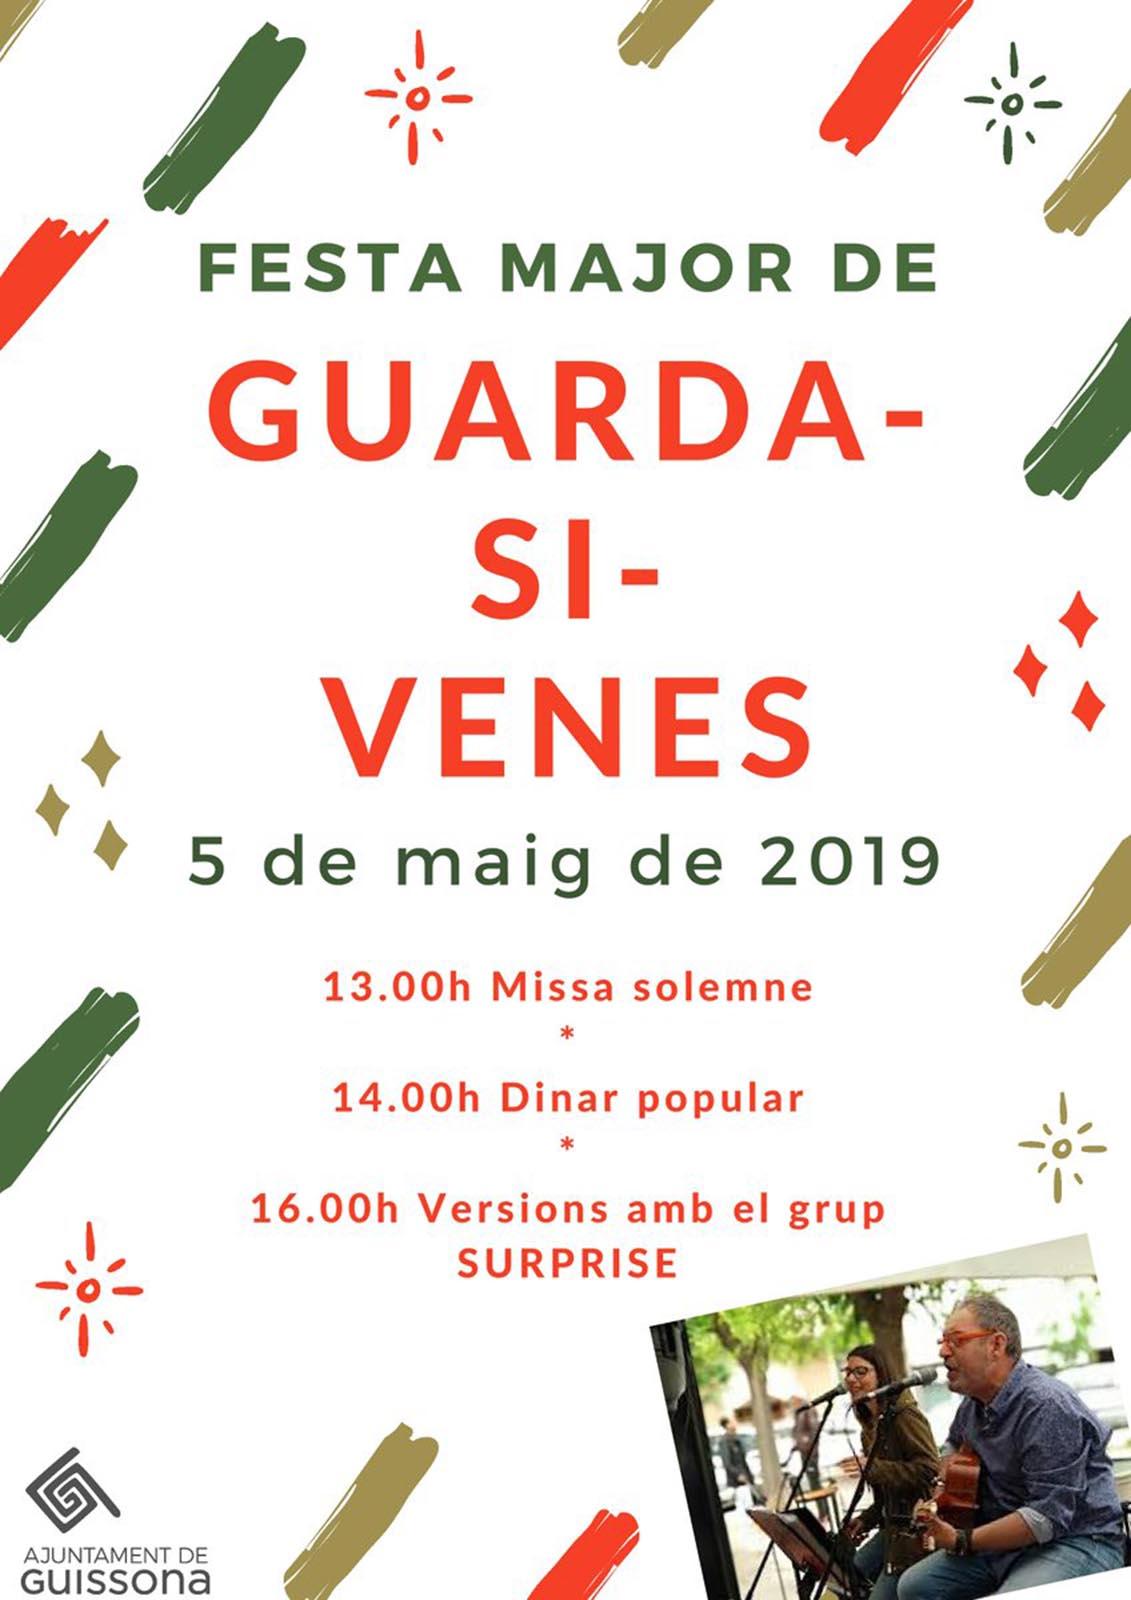 Festa major de Guarda-si-venes 2019